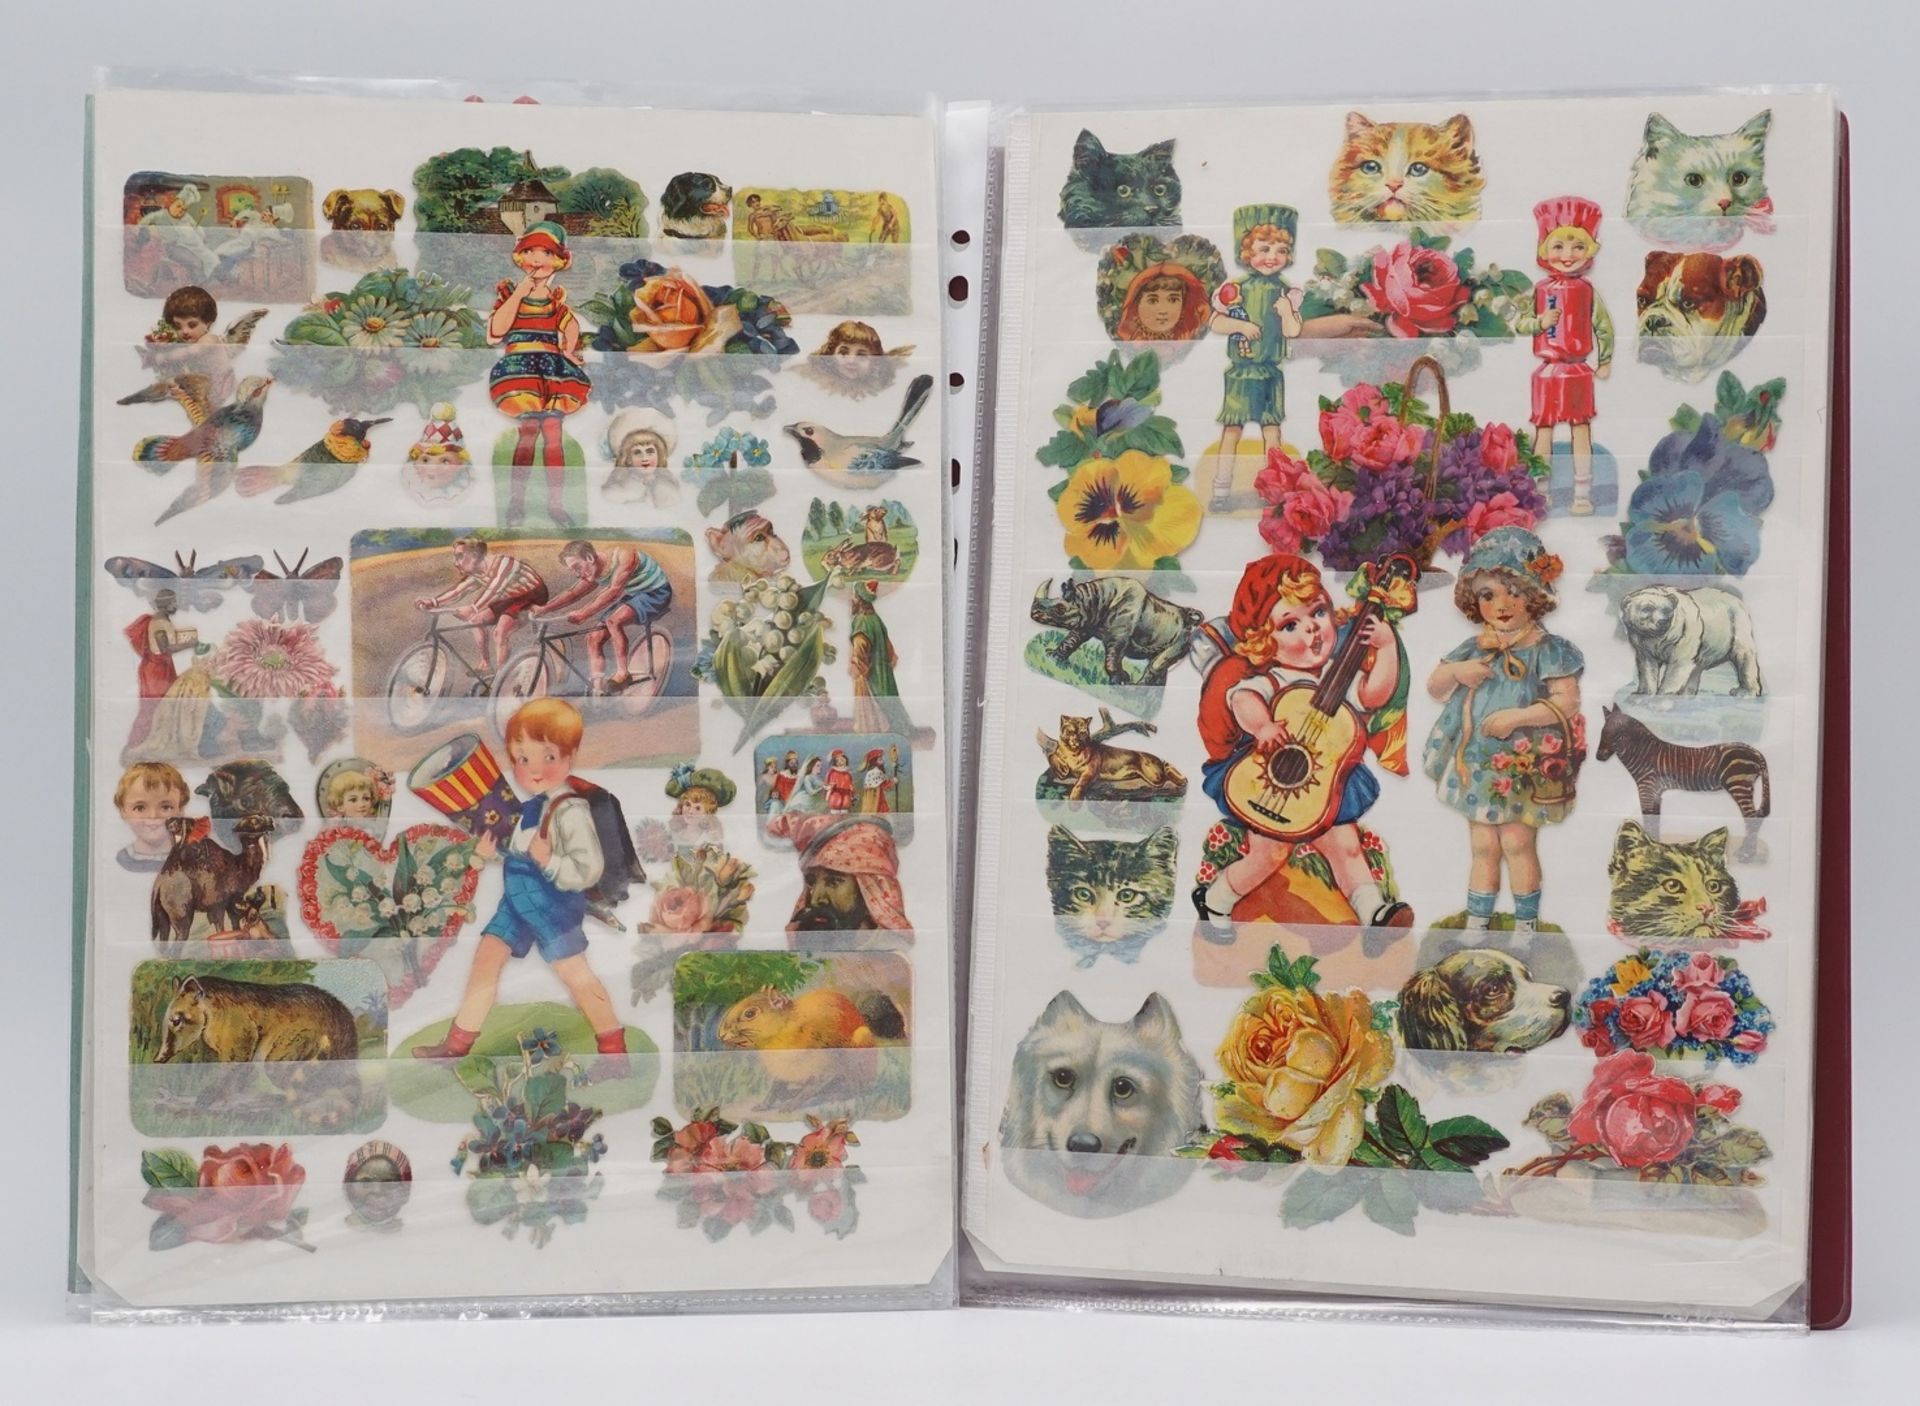 Ca. 230 Stammbuchbilderum 1900-1930, unter anderem Kinder, Blumen und Tiere, auf